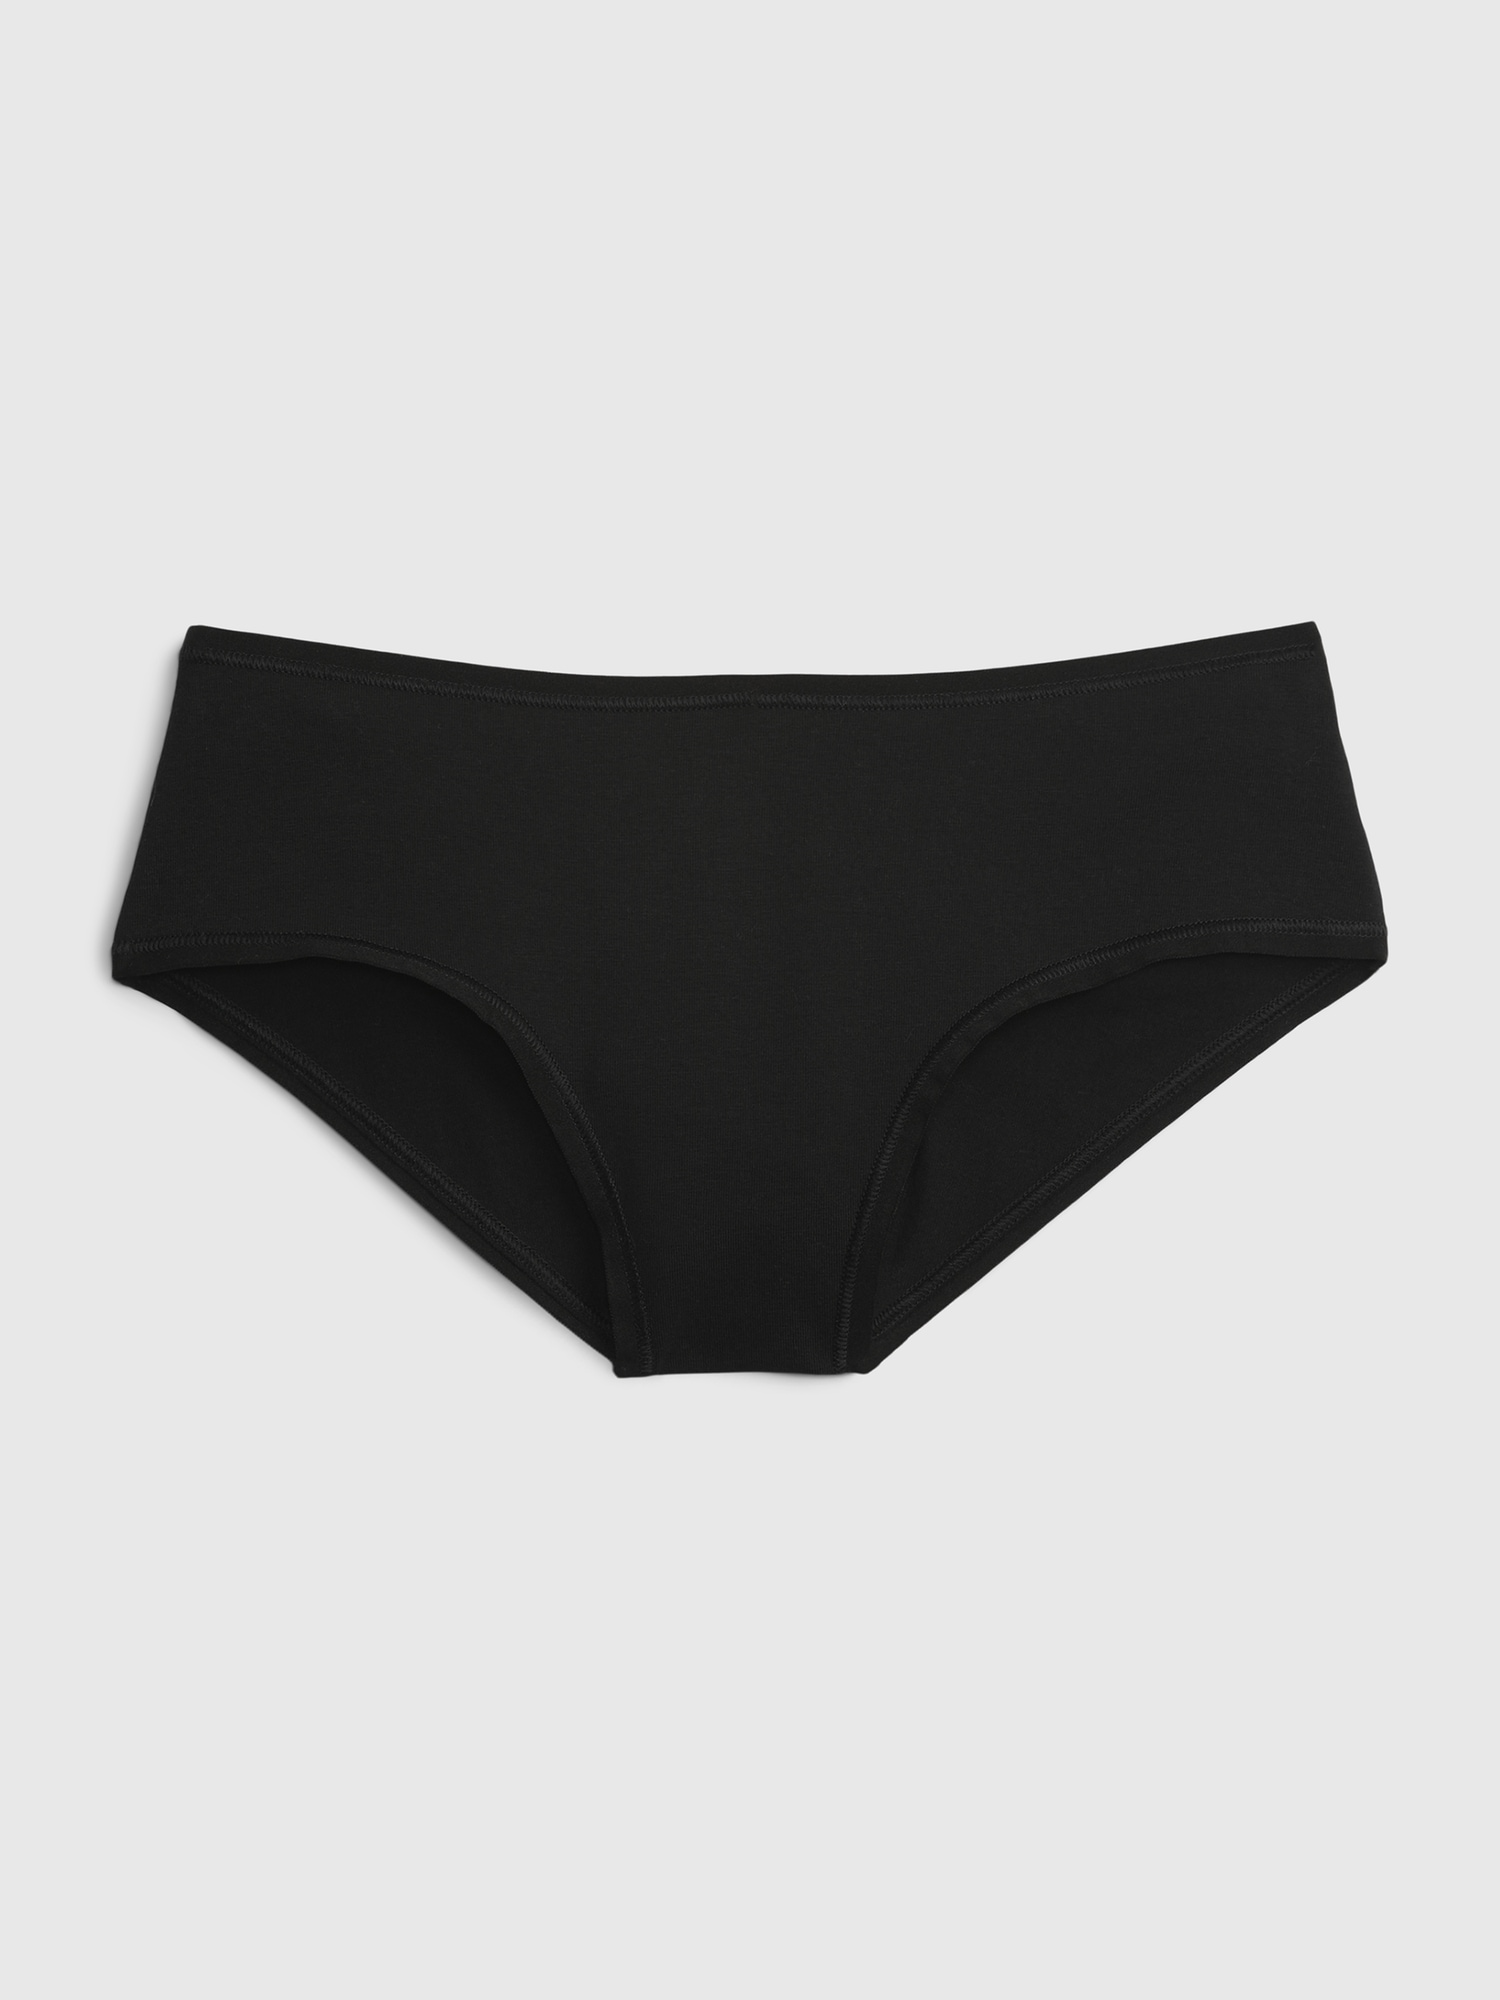 Women's Cotton Stretch Comfort Hipster Underwear - Auden™ Black 2x